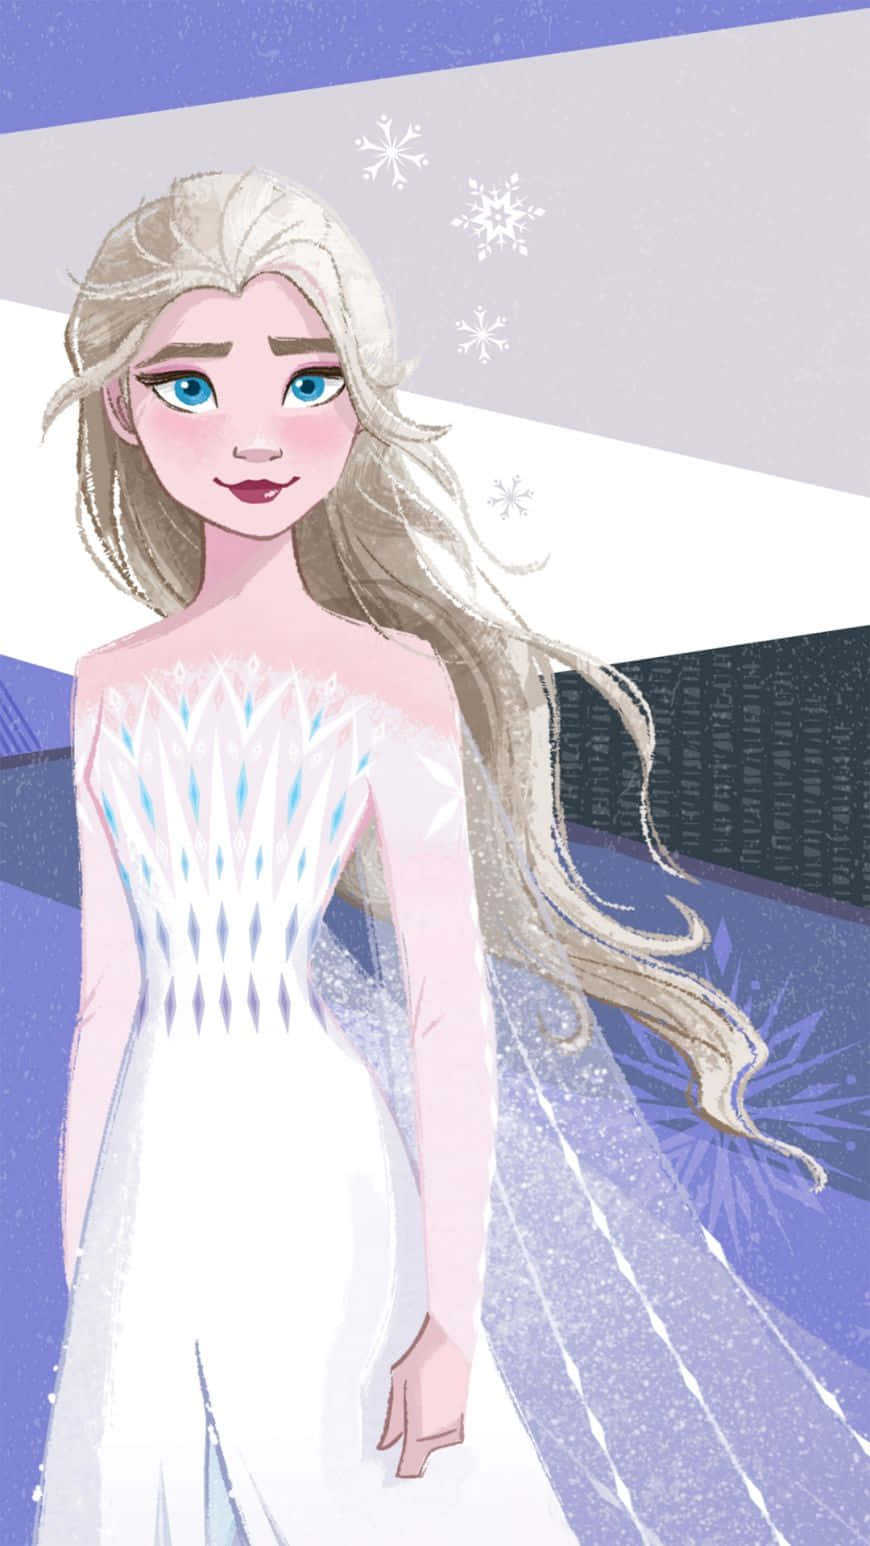 Omfamnavinterens Kraft Och Följ I Drottning Elsa's Fotspår Med Denna Vackra Vita Klänning Från Frost 2 För Din Dator- Eller Mobilskärms Bakgrundsbild. Wallpaper